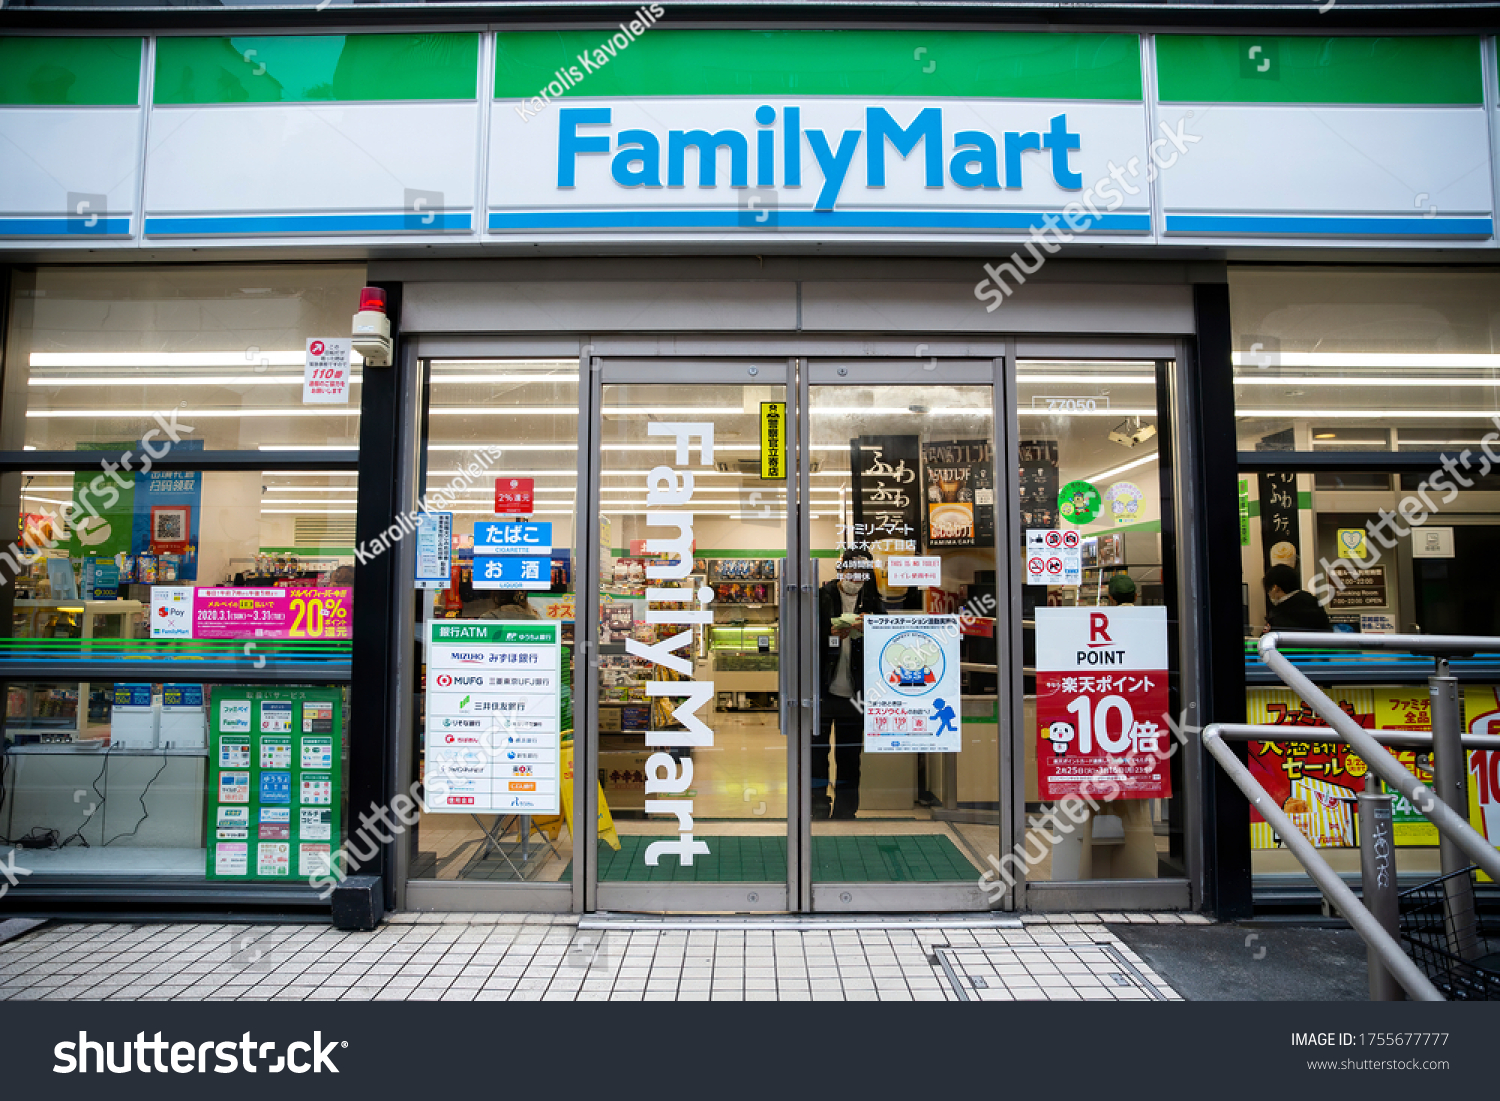 Mart family Stock